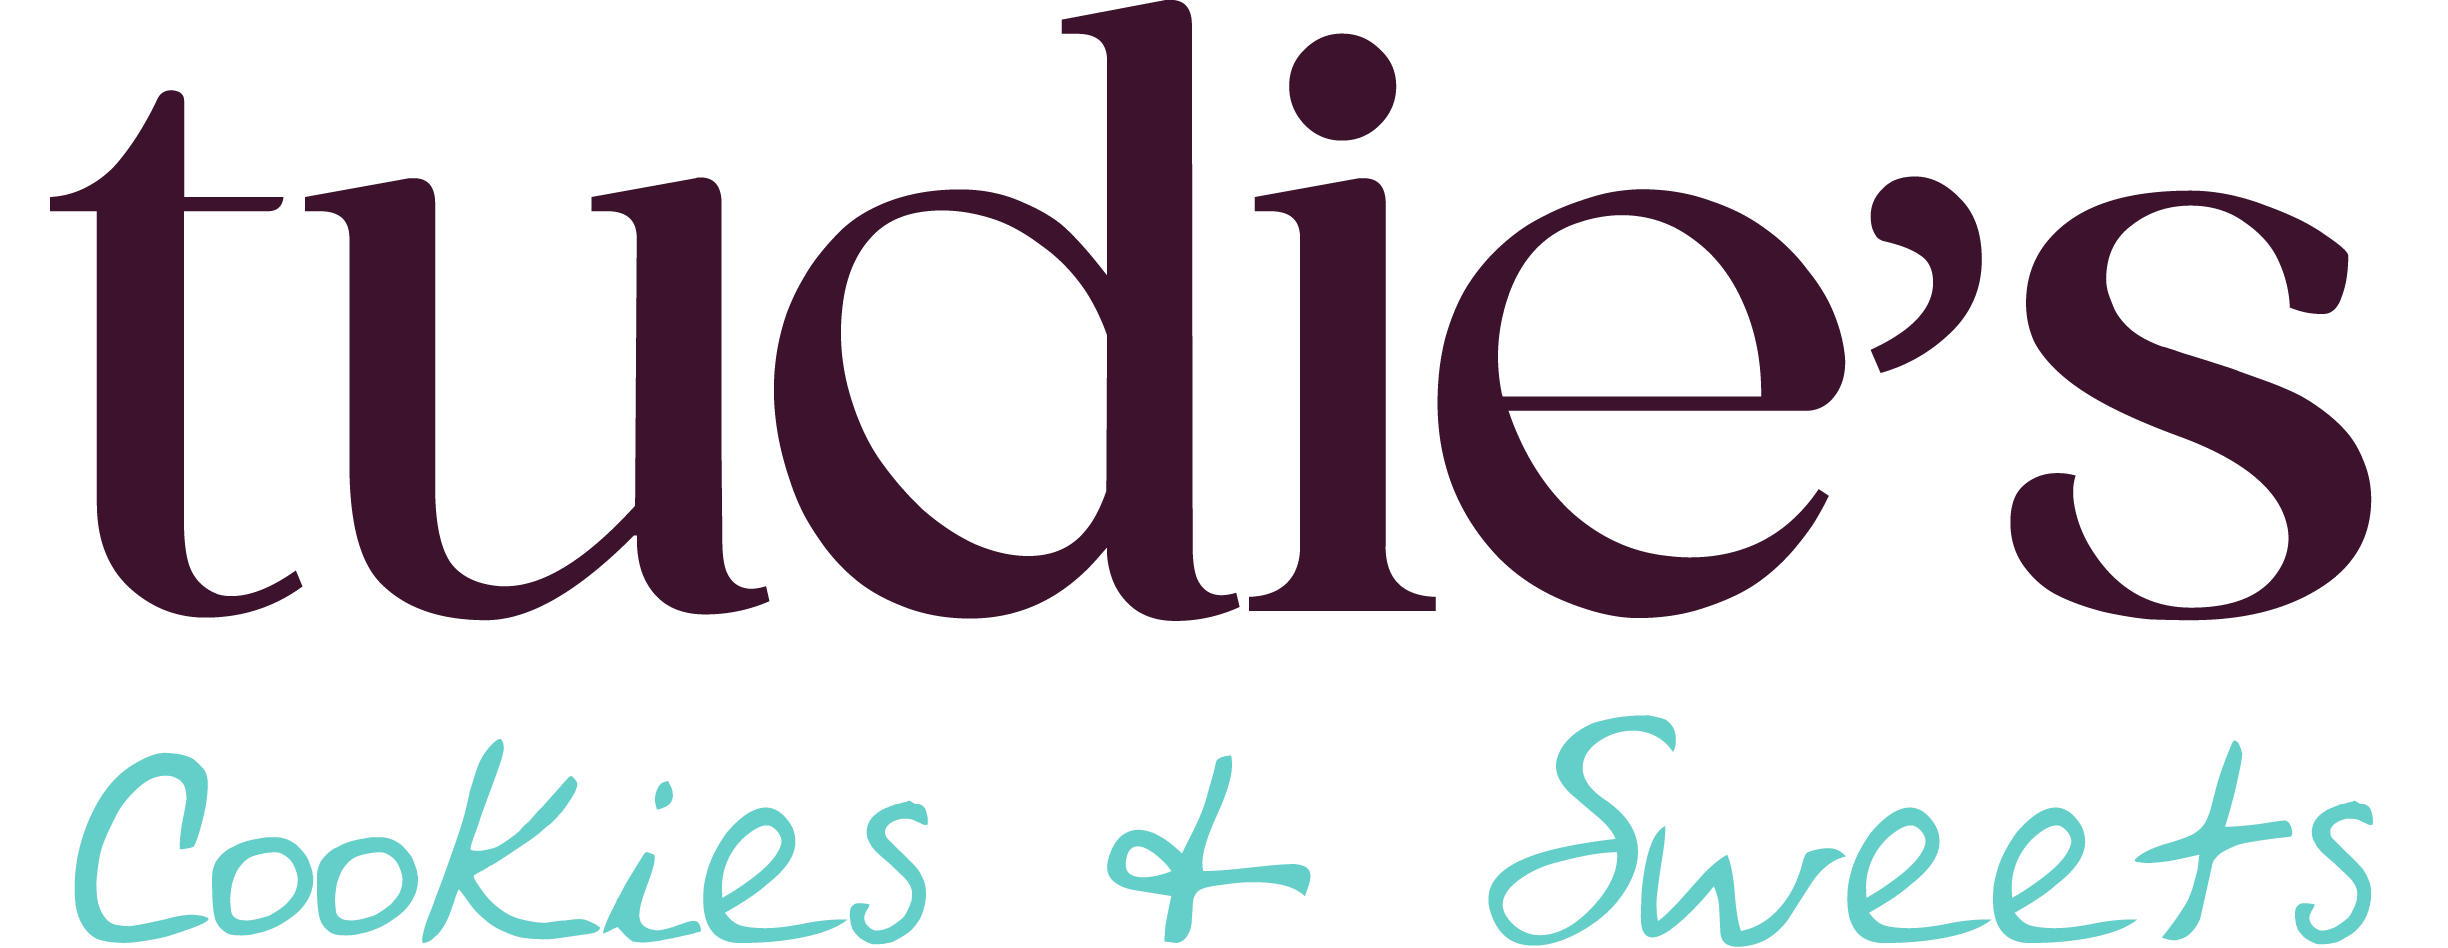 Tudie's Cookies & Sweets wordmark logo